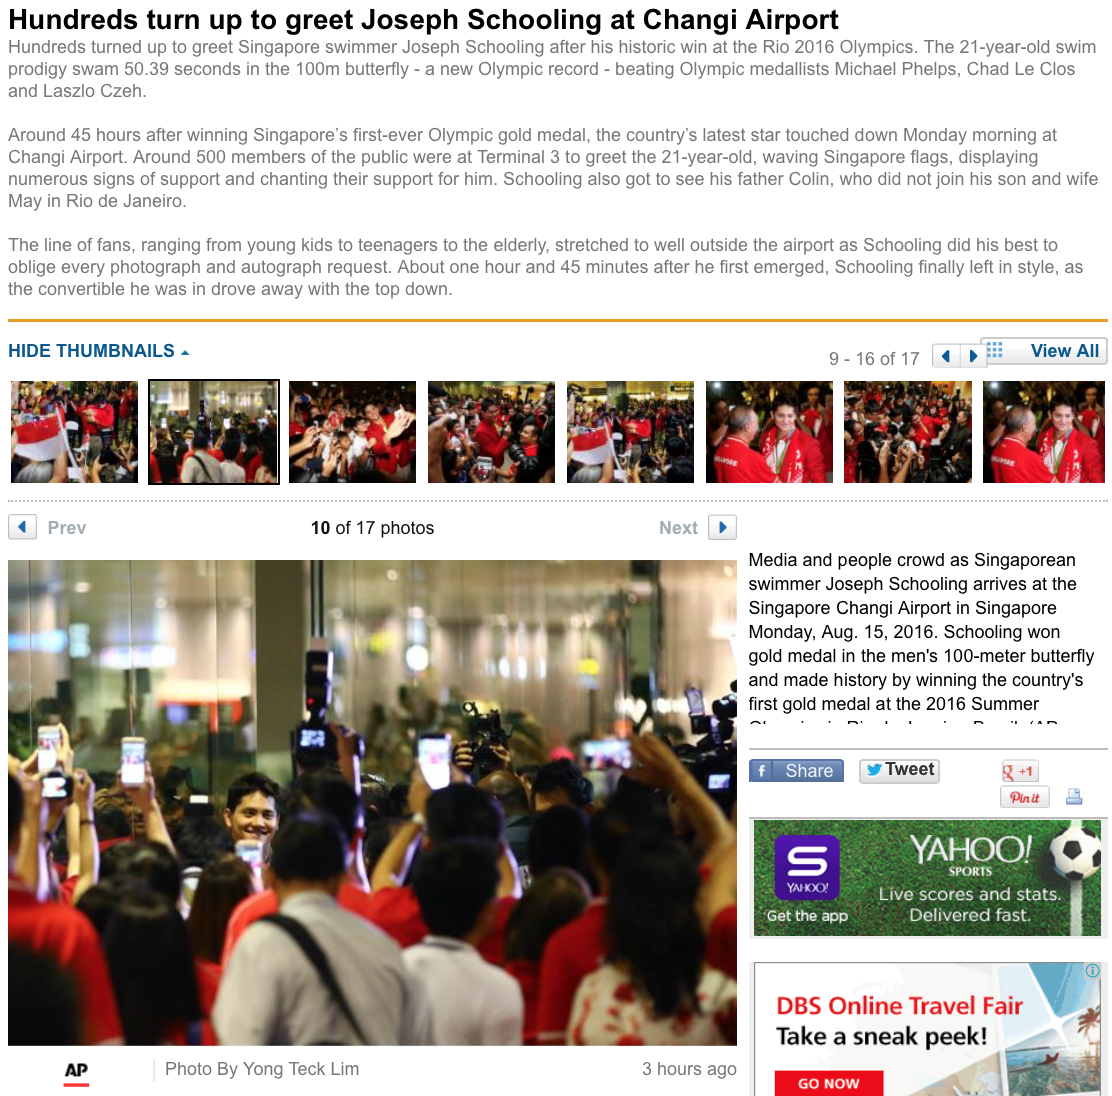  Joseph Schooling's Singapore return for the Associated Press (www.apimages.com) 